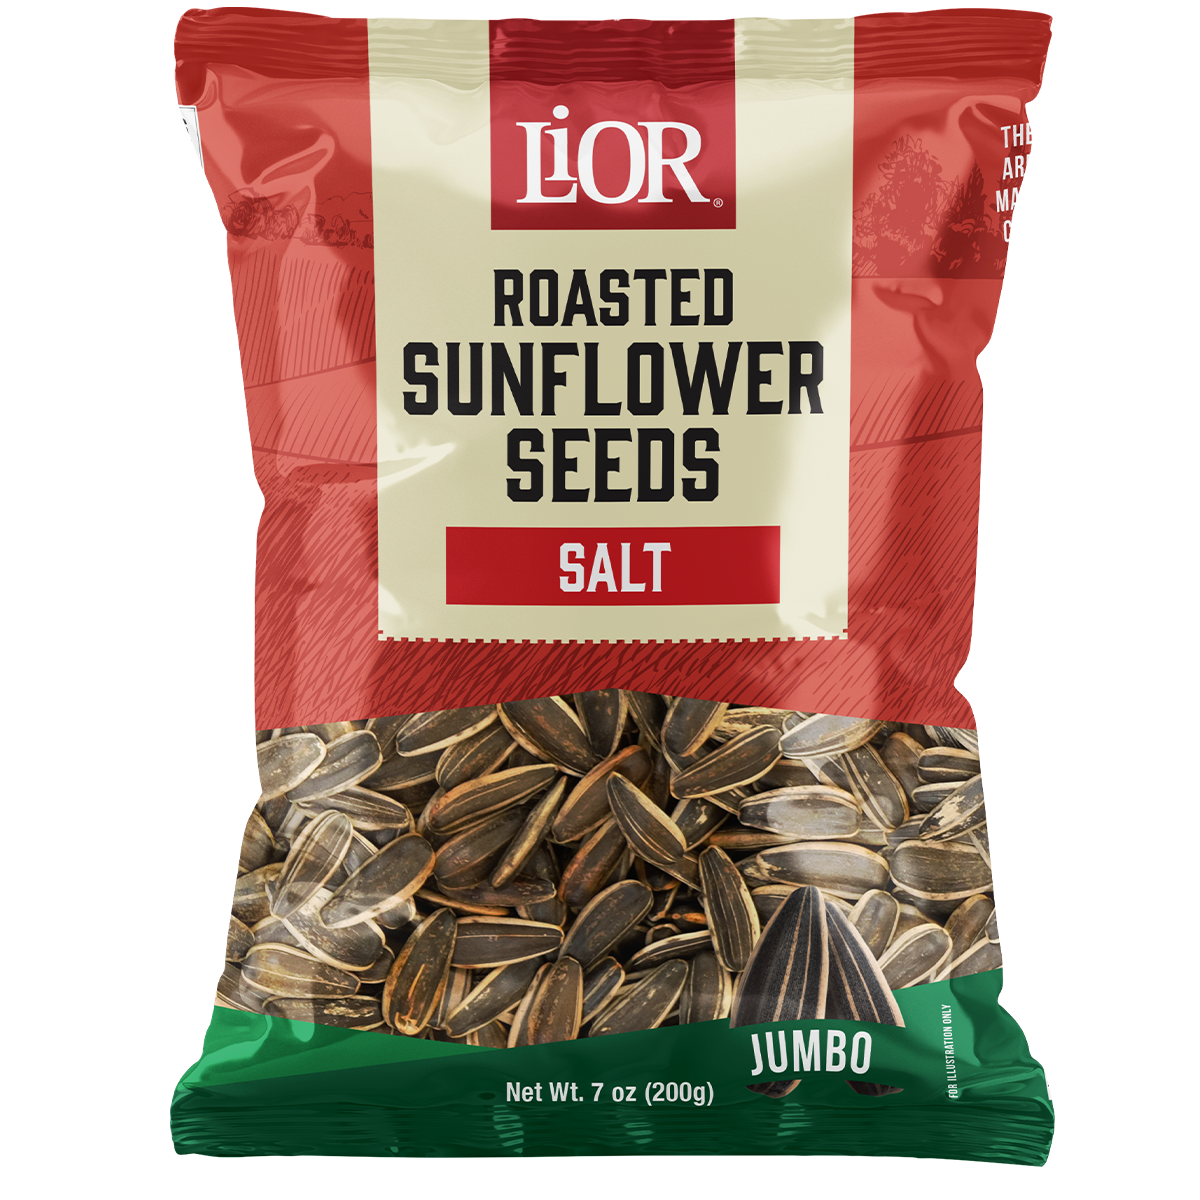 Jumbo Sunflower Seeds | Roasted & Salted | 7.0 oz | LiOR